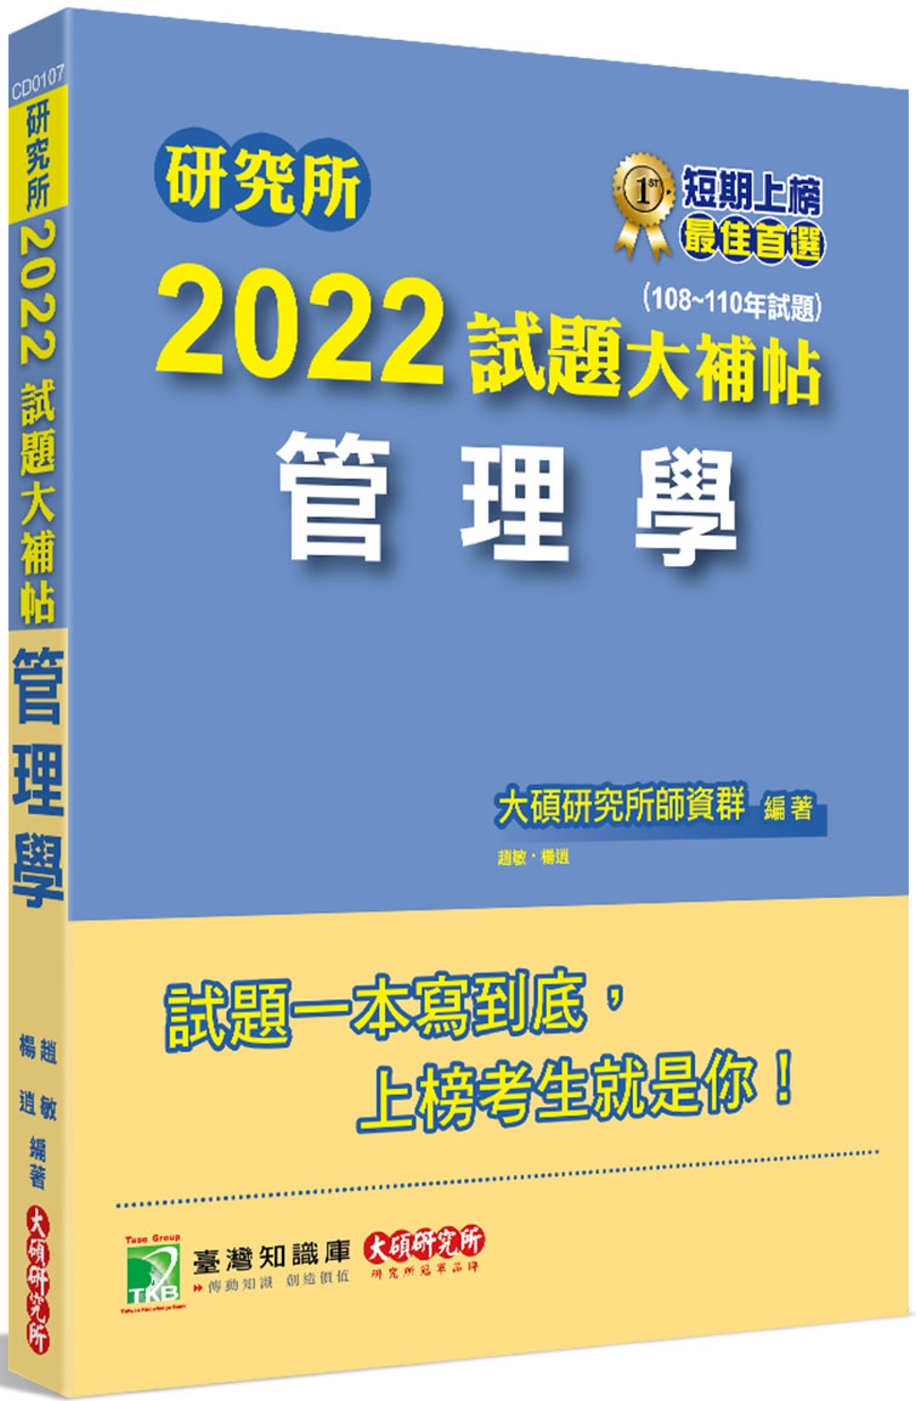 研究所2022試題大補帖【管理學】(108~110年試題)[...